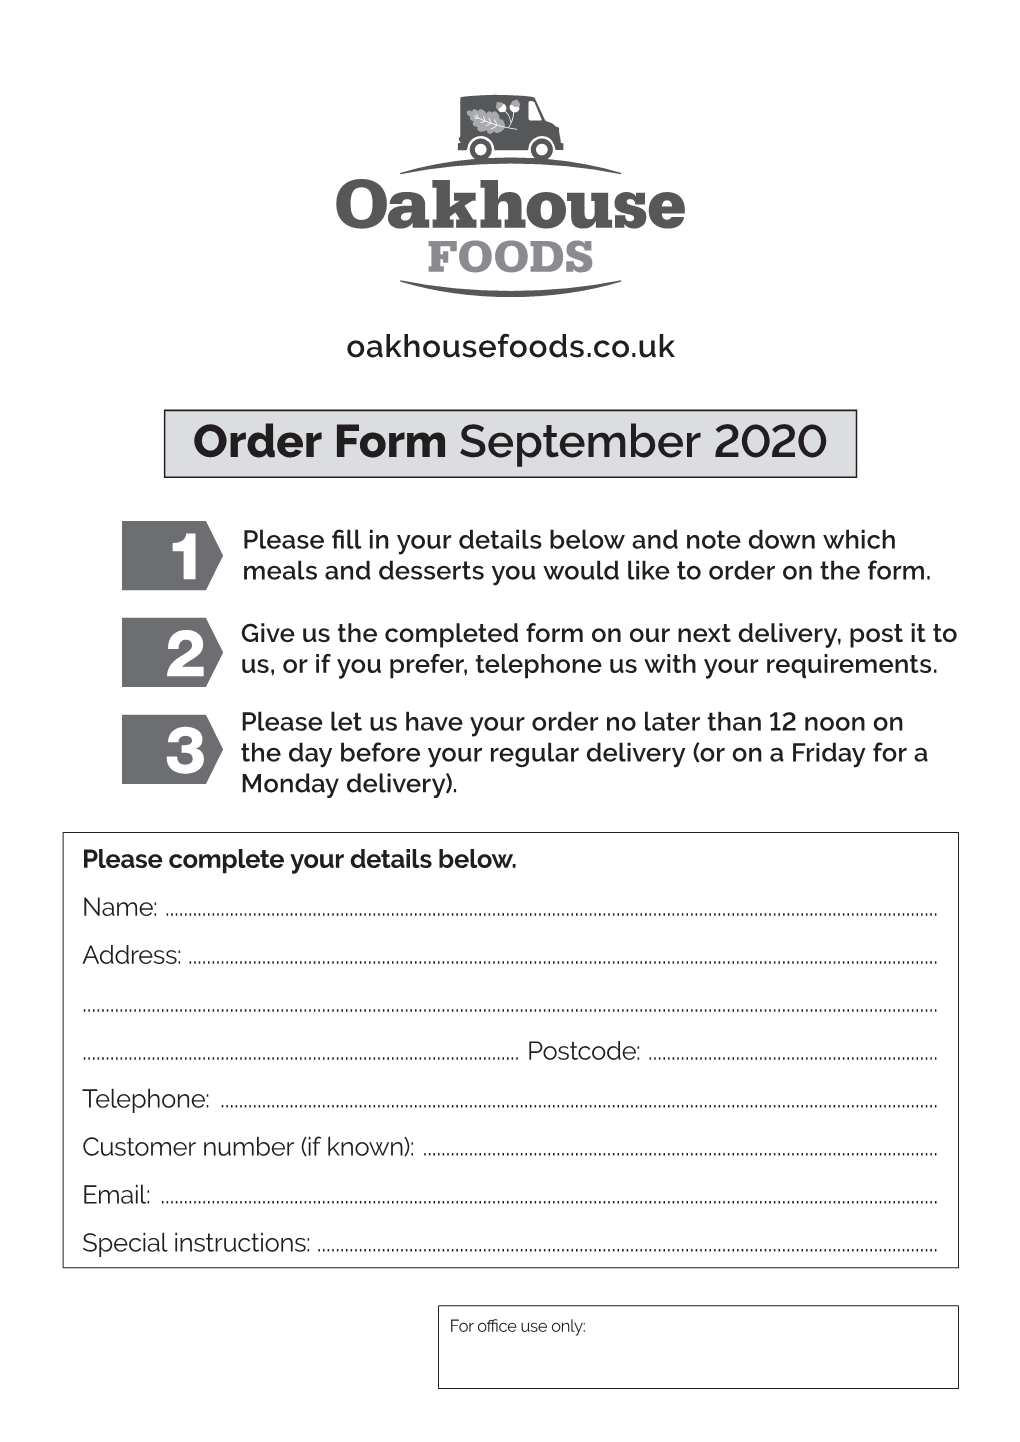 Order Form September 2020